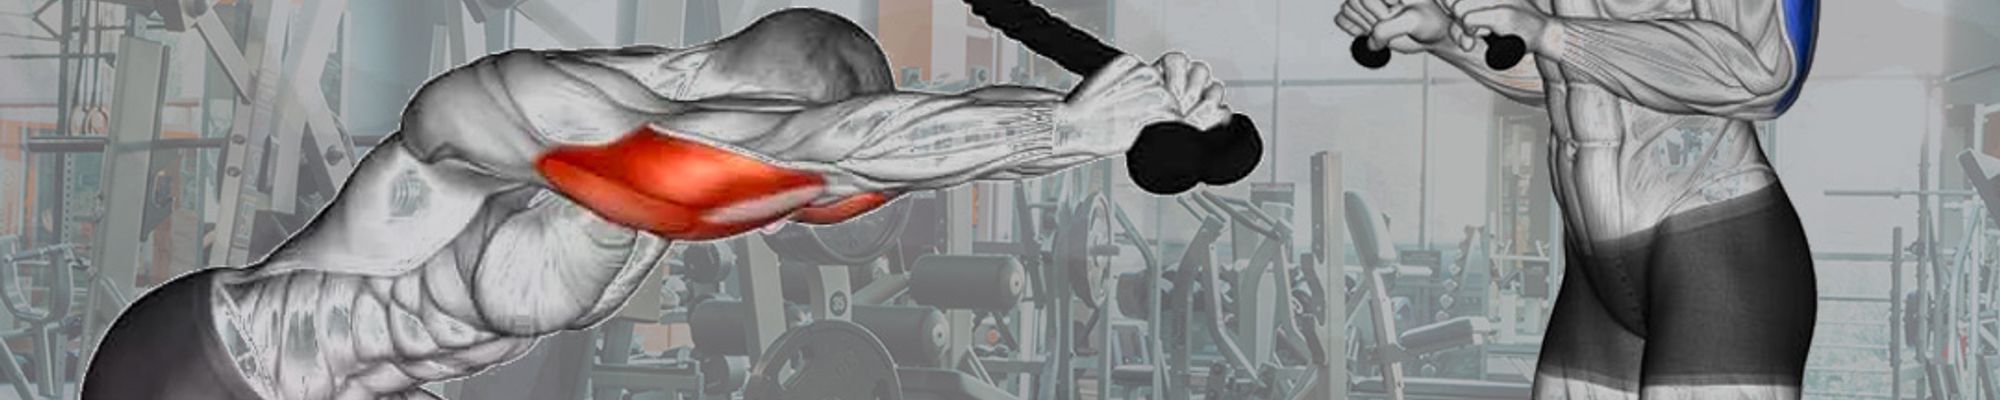 Tricepsové extenzie za hlavou vs. pred telom. Omnoho lepší nárast tricepsu pri prvom variante?